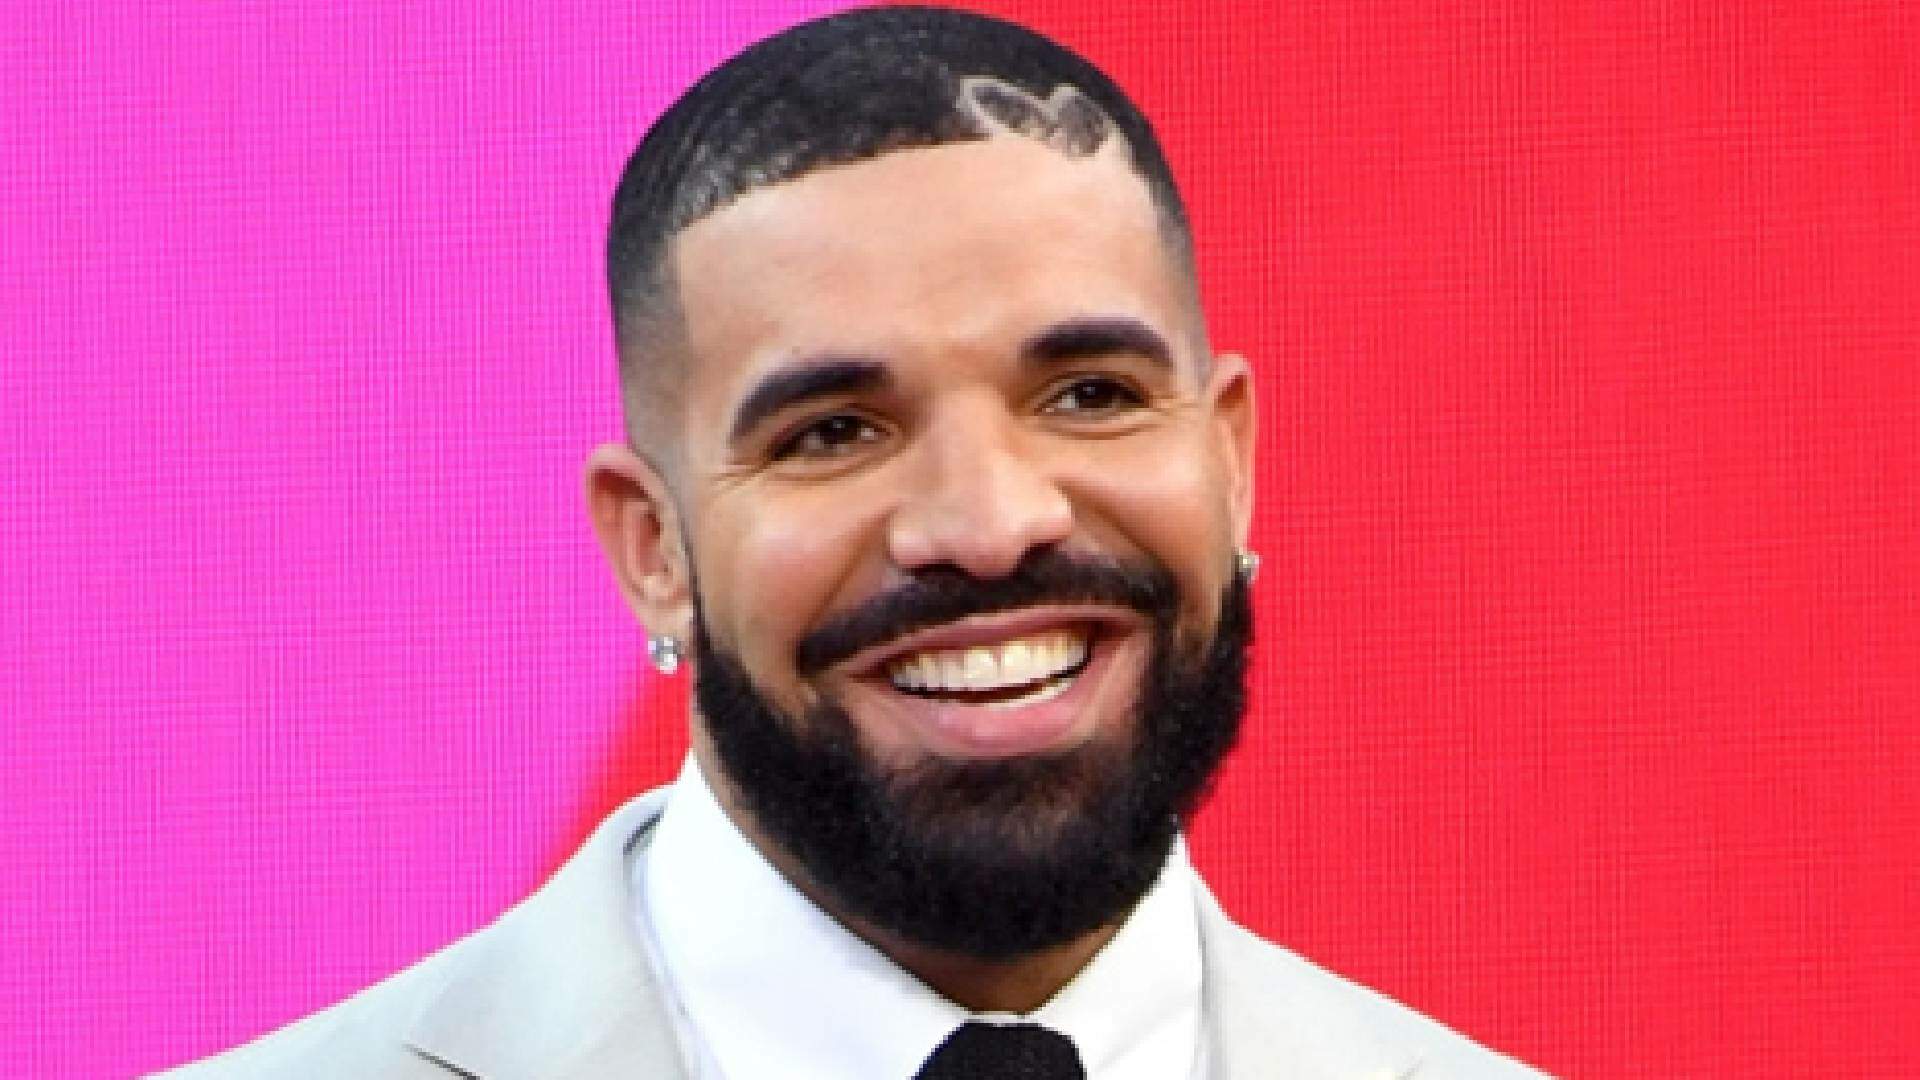 Drake surtou? Rapper choca fãs ao fazer revelações bizarras sobre sua vida pessoal - Metropolitana FM